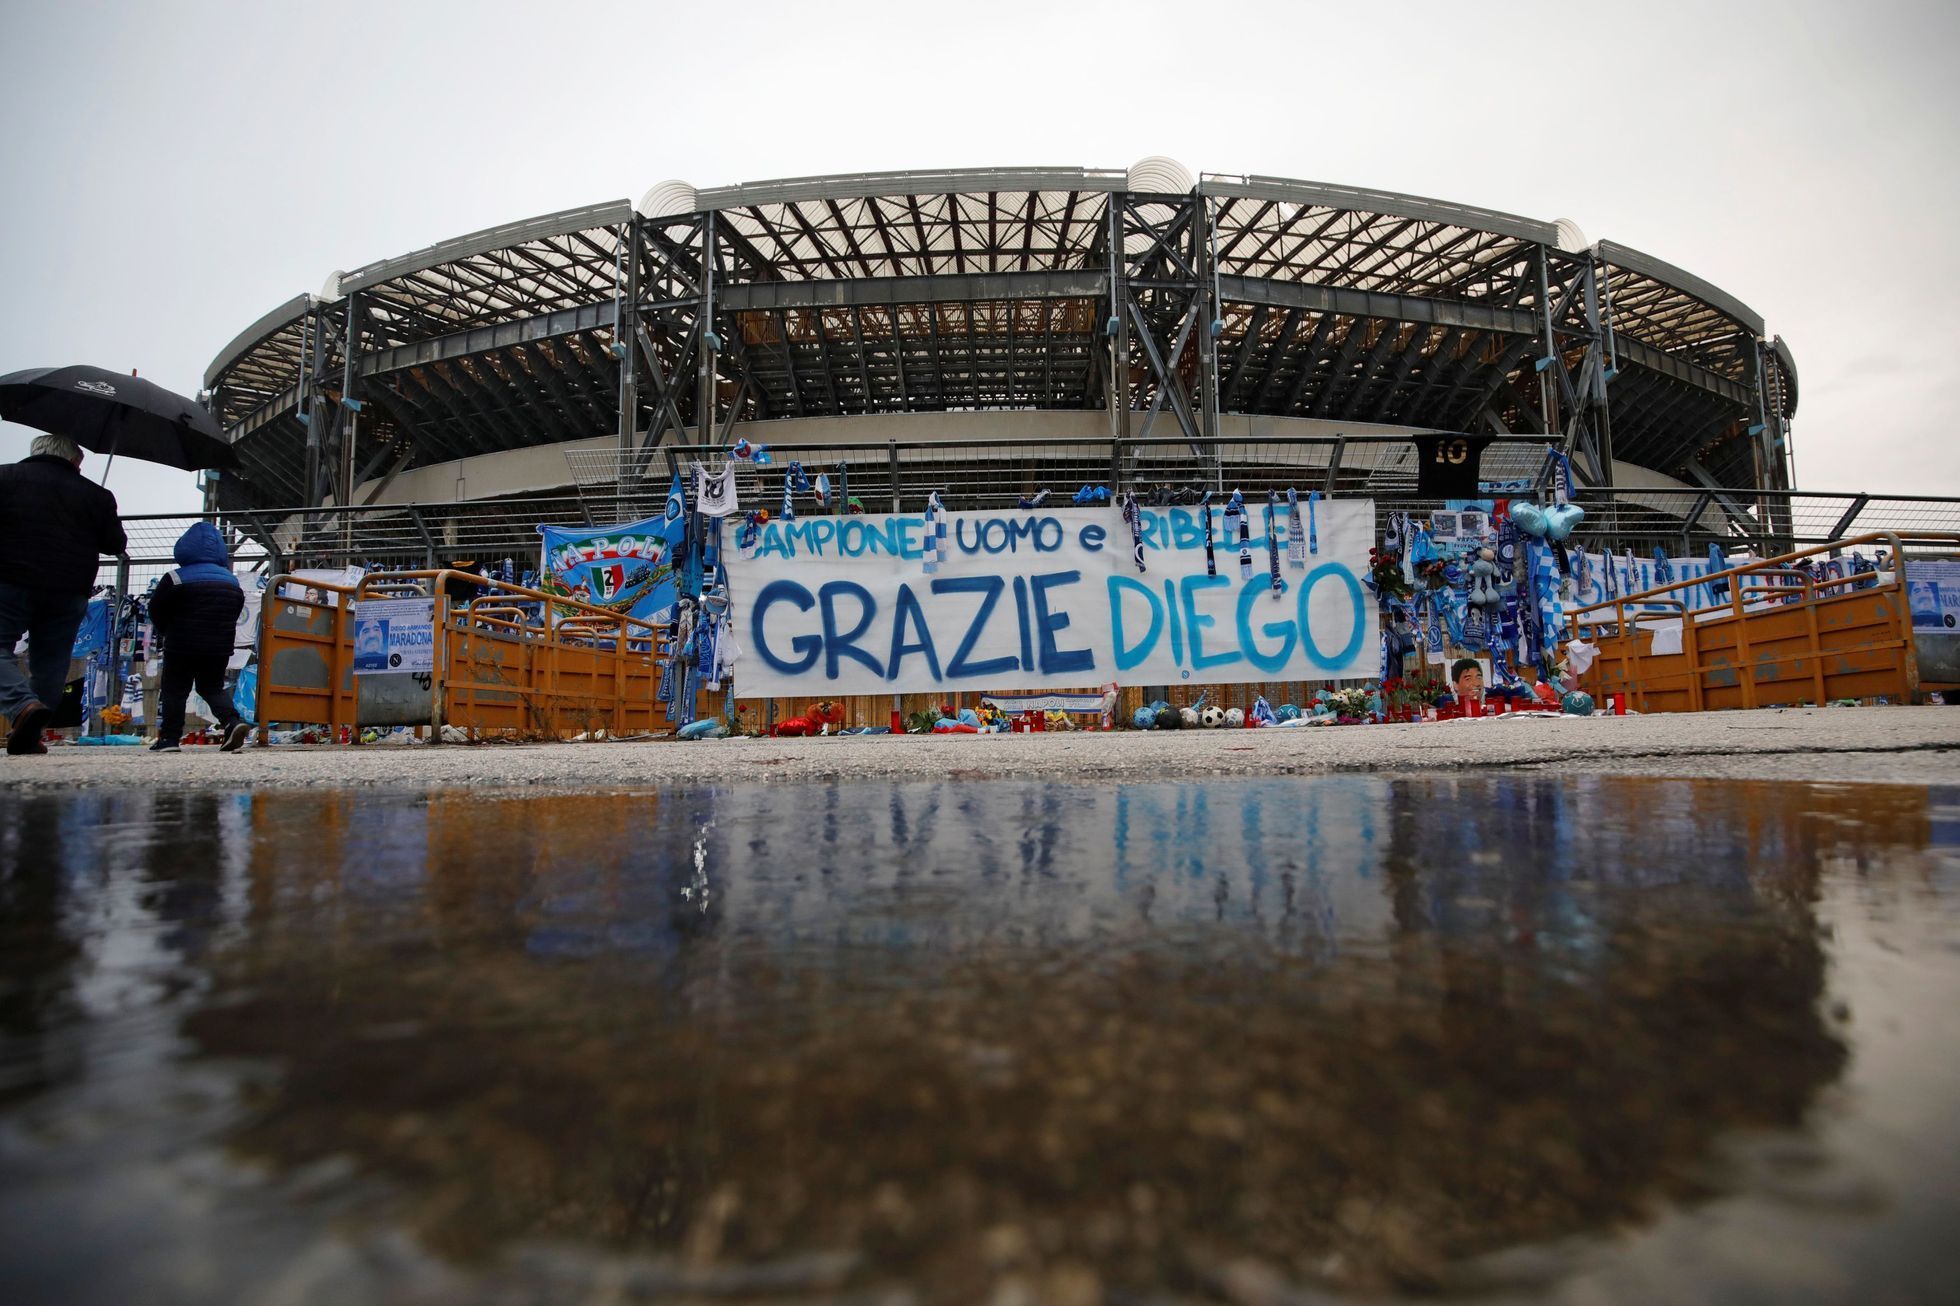 Stadion v Neapoli už nese jméno zesnulé fotbalové legendy Diega Maradony